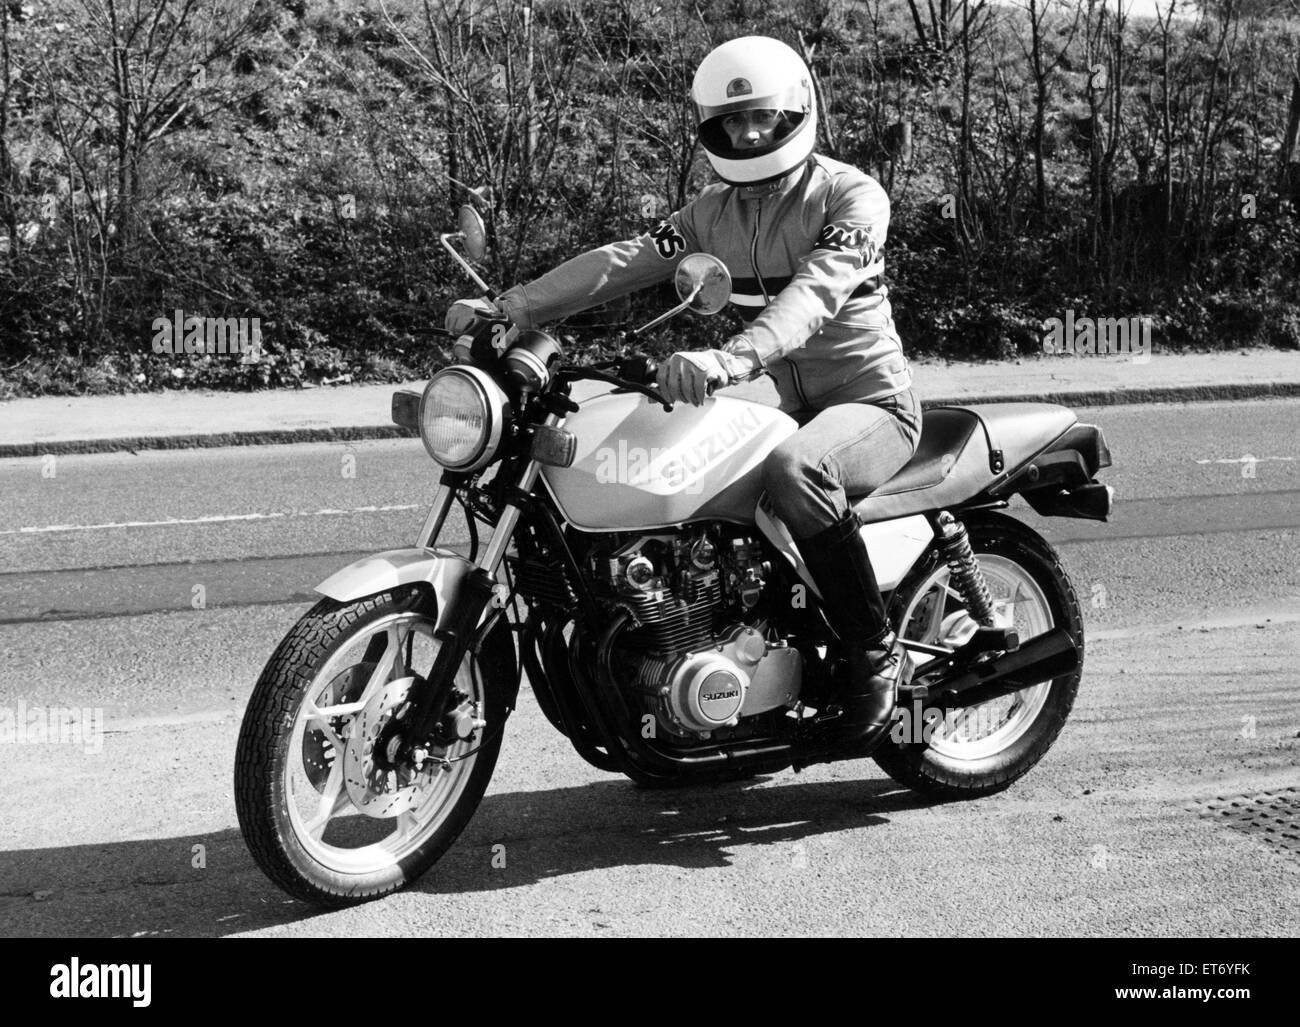 Tipico delle ultime rends nel motociclismo è questo 650cc Katana macchina da Suzuki. Irto di innovazione, questo nuovo arrivato è stato progettato con il mercato europeo in mente e volontà di vendere circa £1.700. Il 14 aprile 1981. Foto Stock